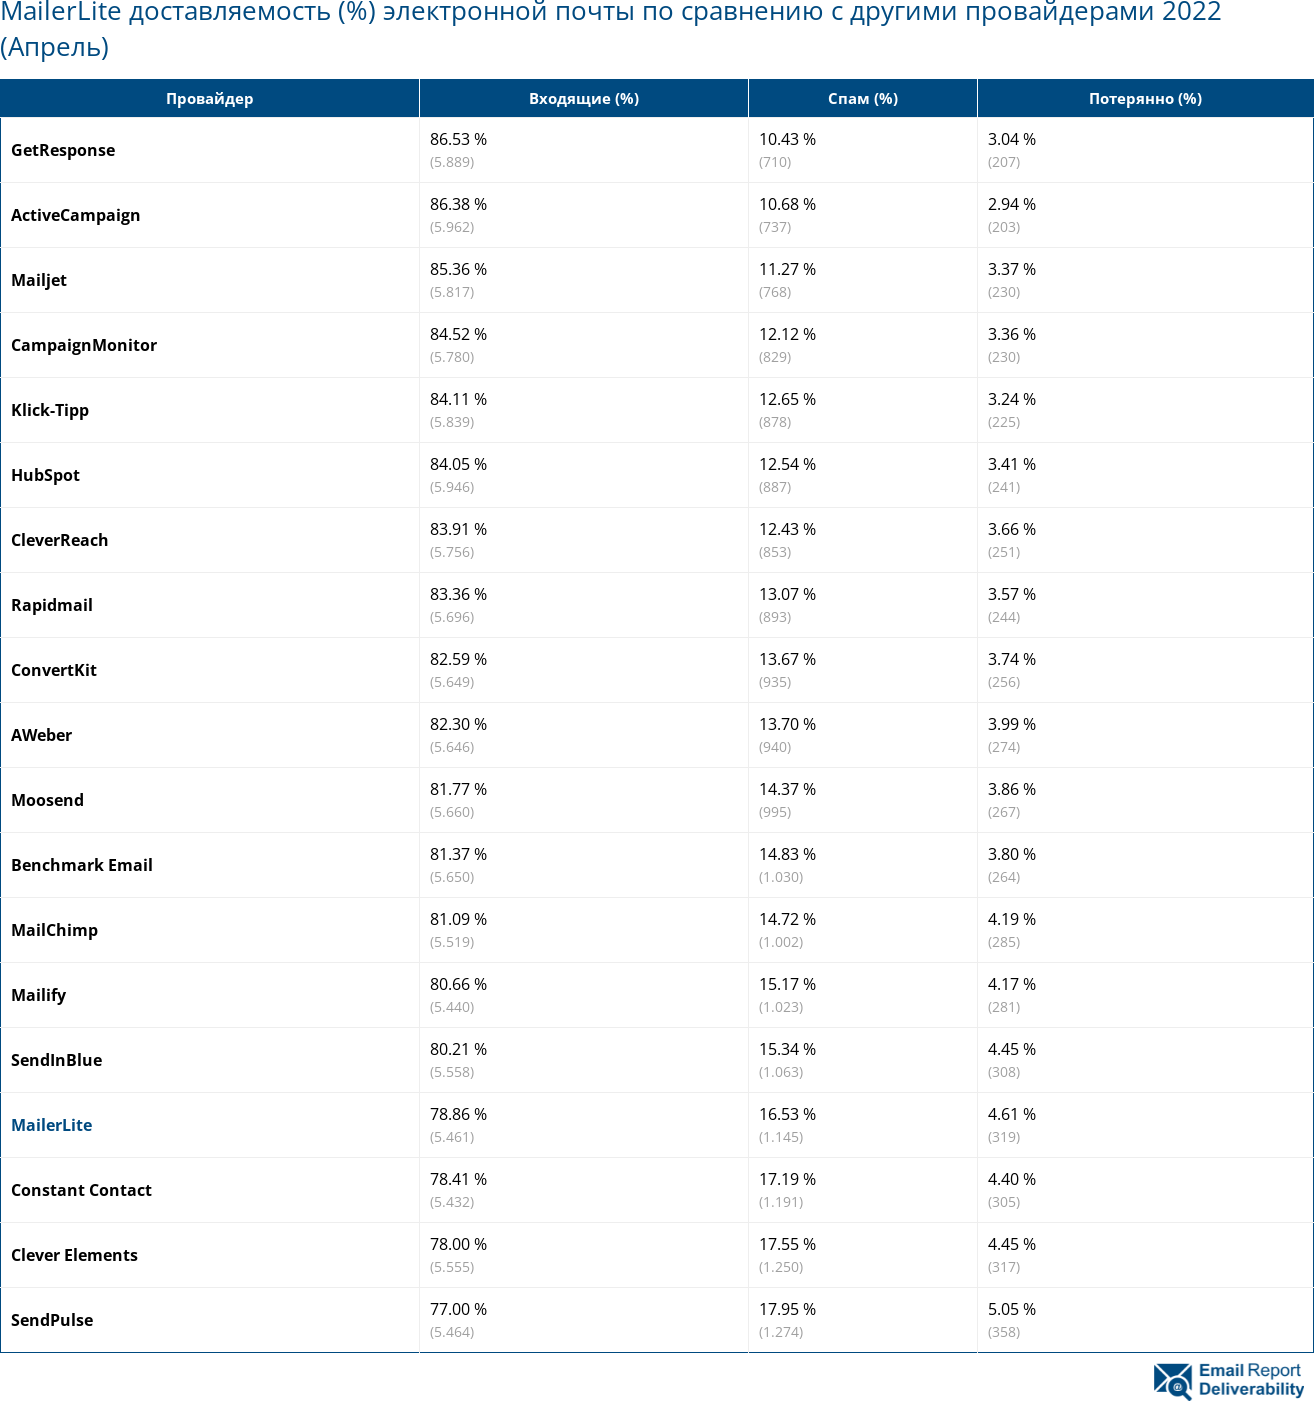 MailerLite доставляемость (%) электронной почты по сравнению с другими провайдерами 2022 (Апрель)